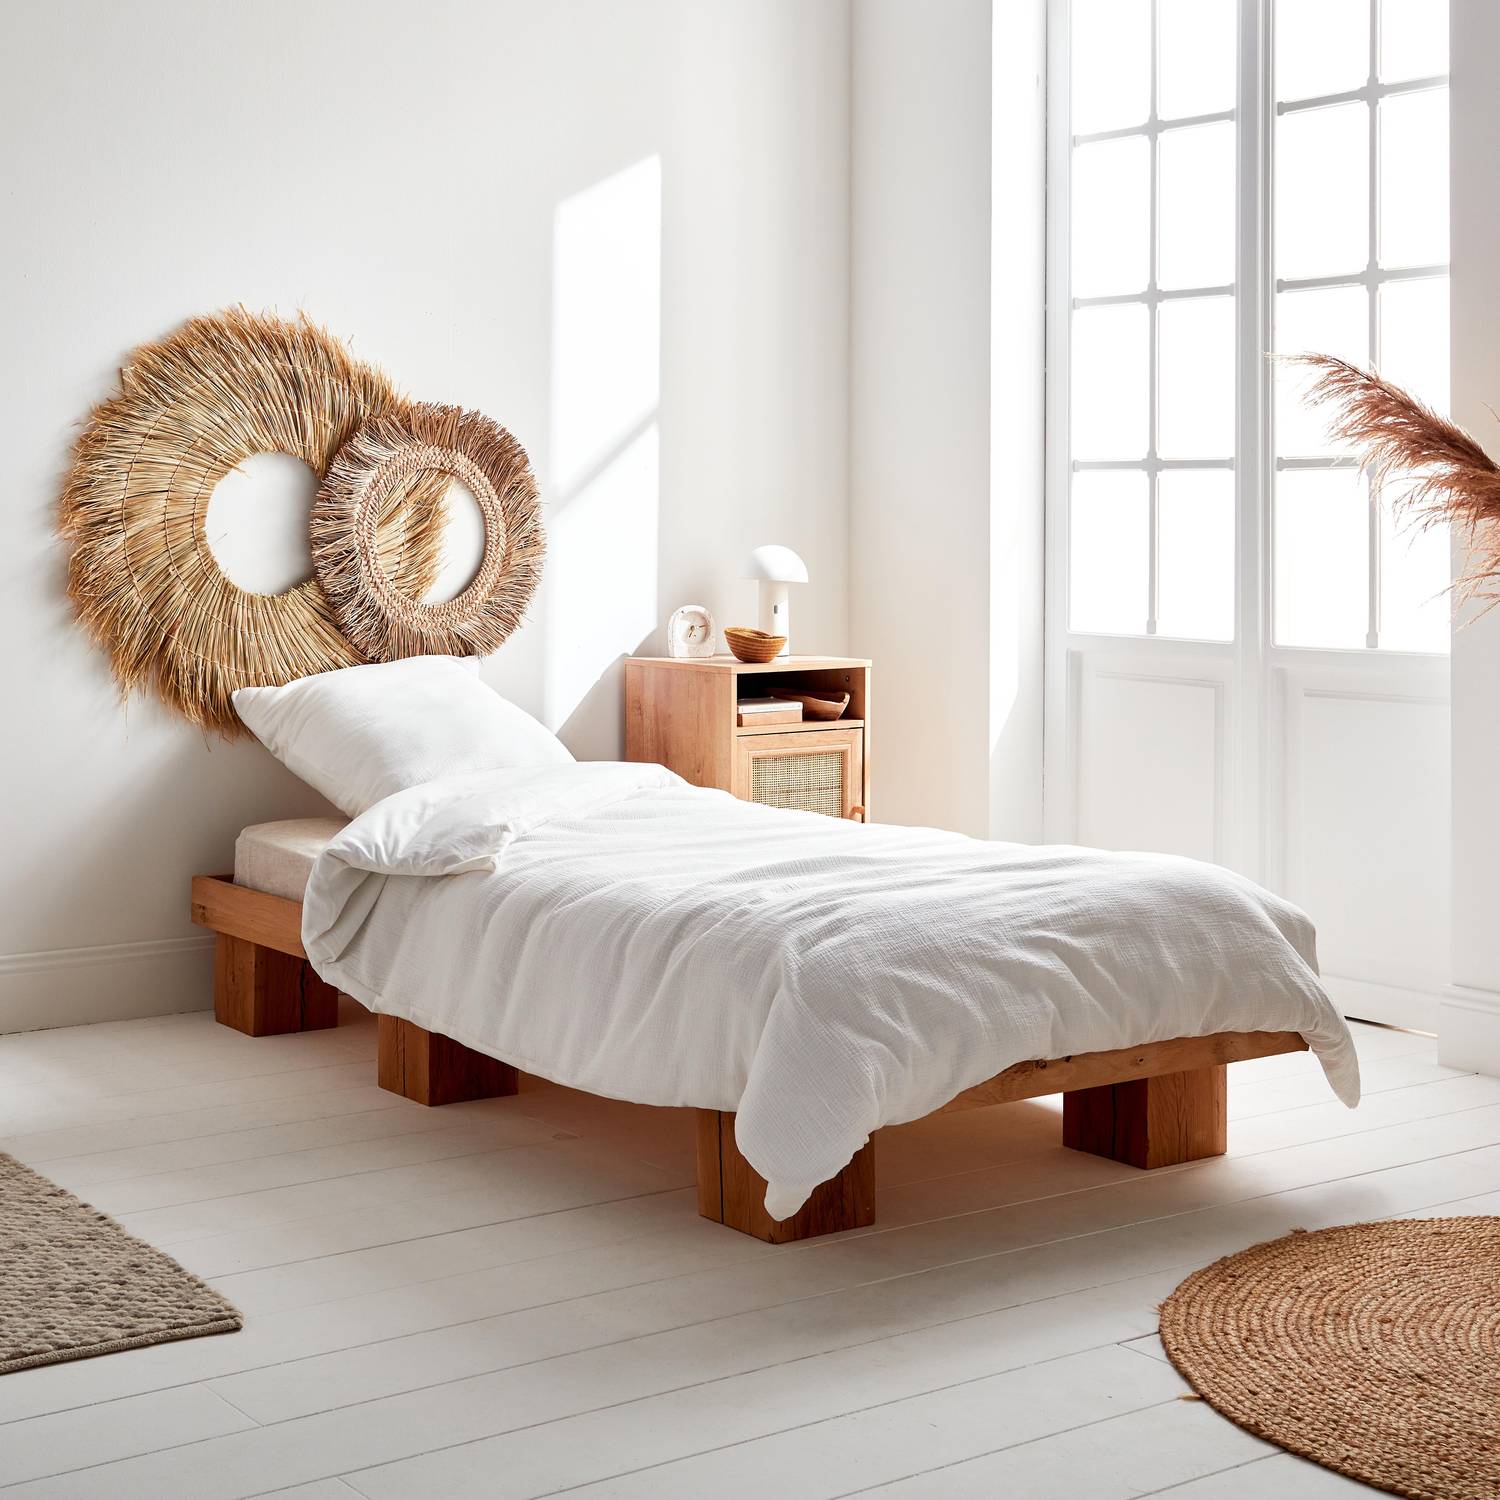 Bettwäschegarnitur aus weißer Baumwoll-Gaze / Baumwolle, 1 Person, 1 Bettbezug mit 1 Kopfkissenbezug 140 x 200 cm Photo1